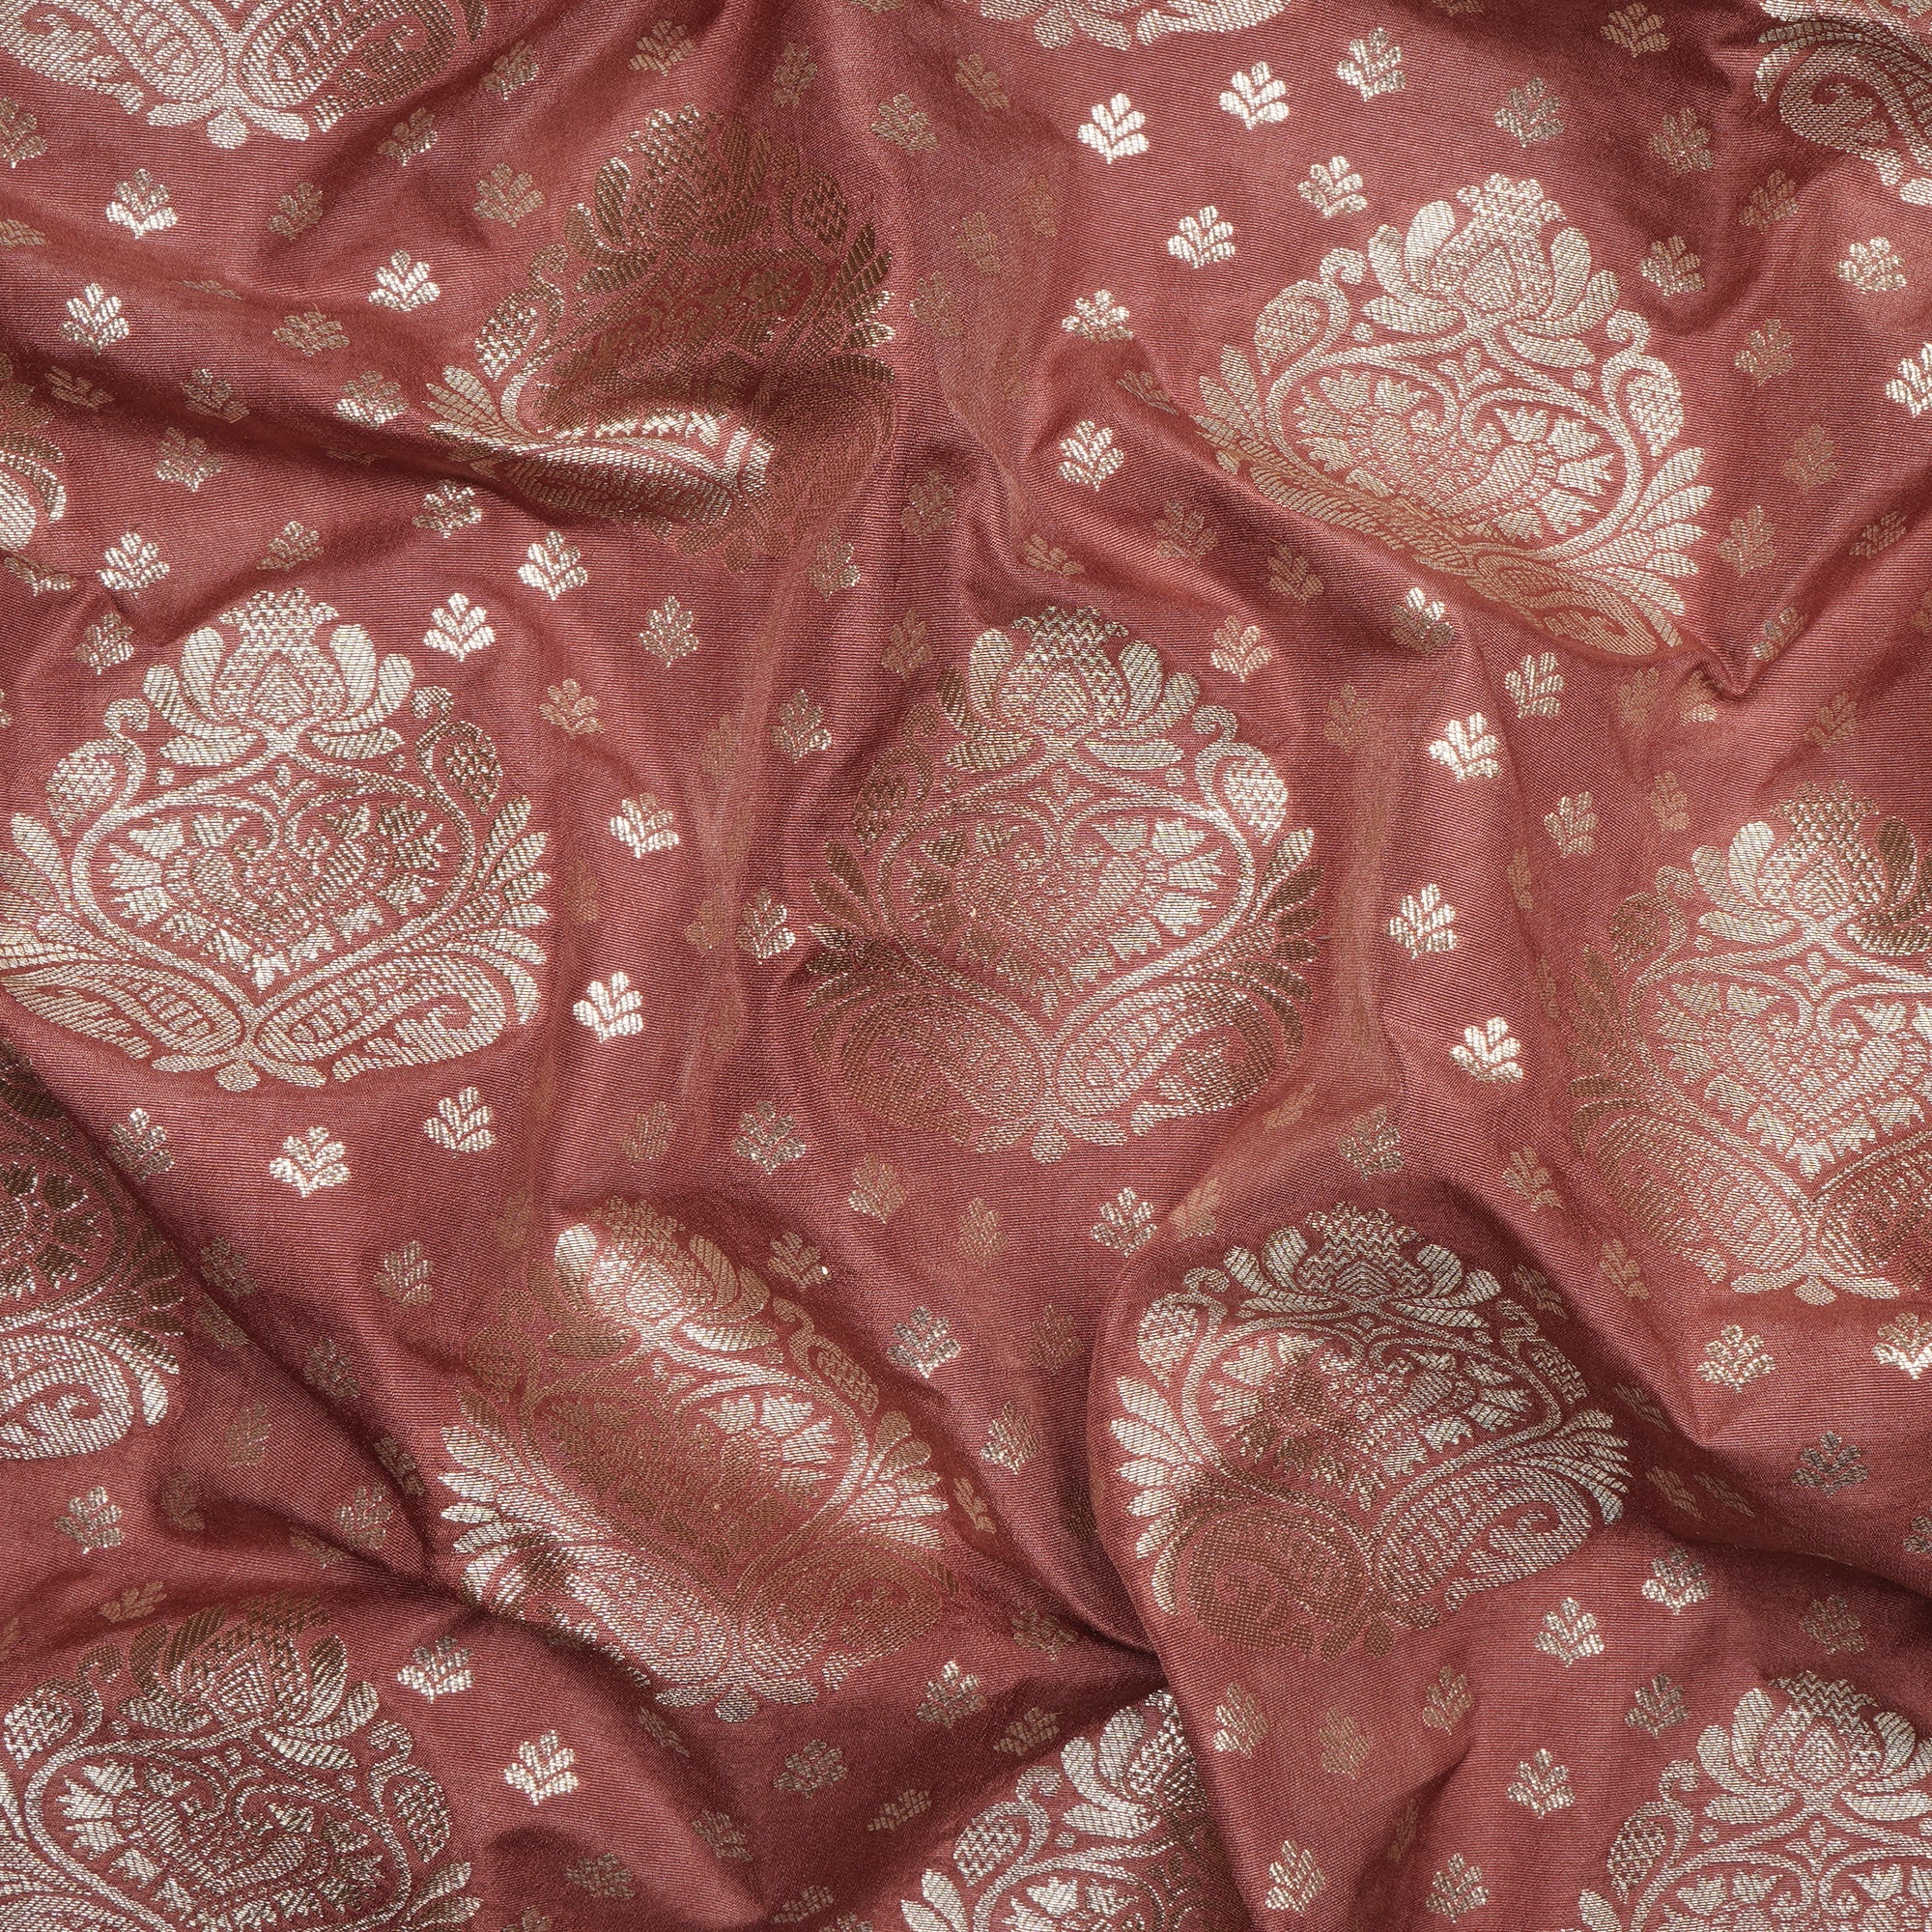 Aragon Floral Booti Pattern Blended Banarasi Brocade Fabric